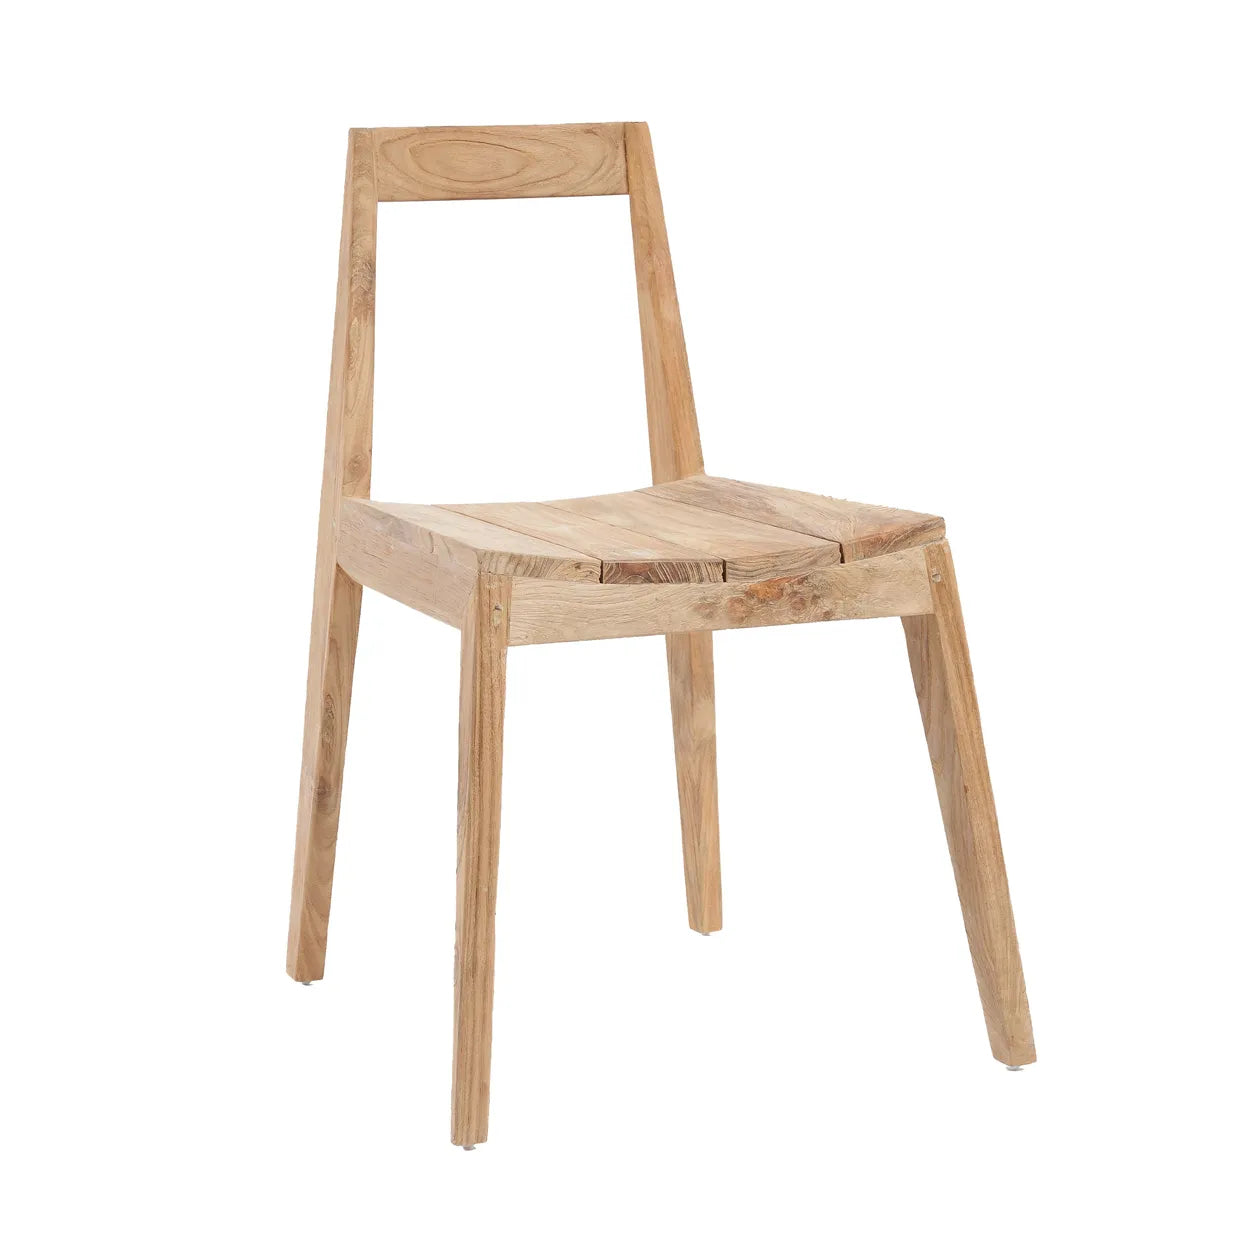 Potes Elegance Chair - Reclaimed Teak Wood Chair